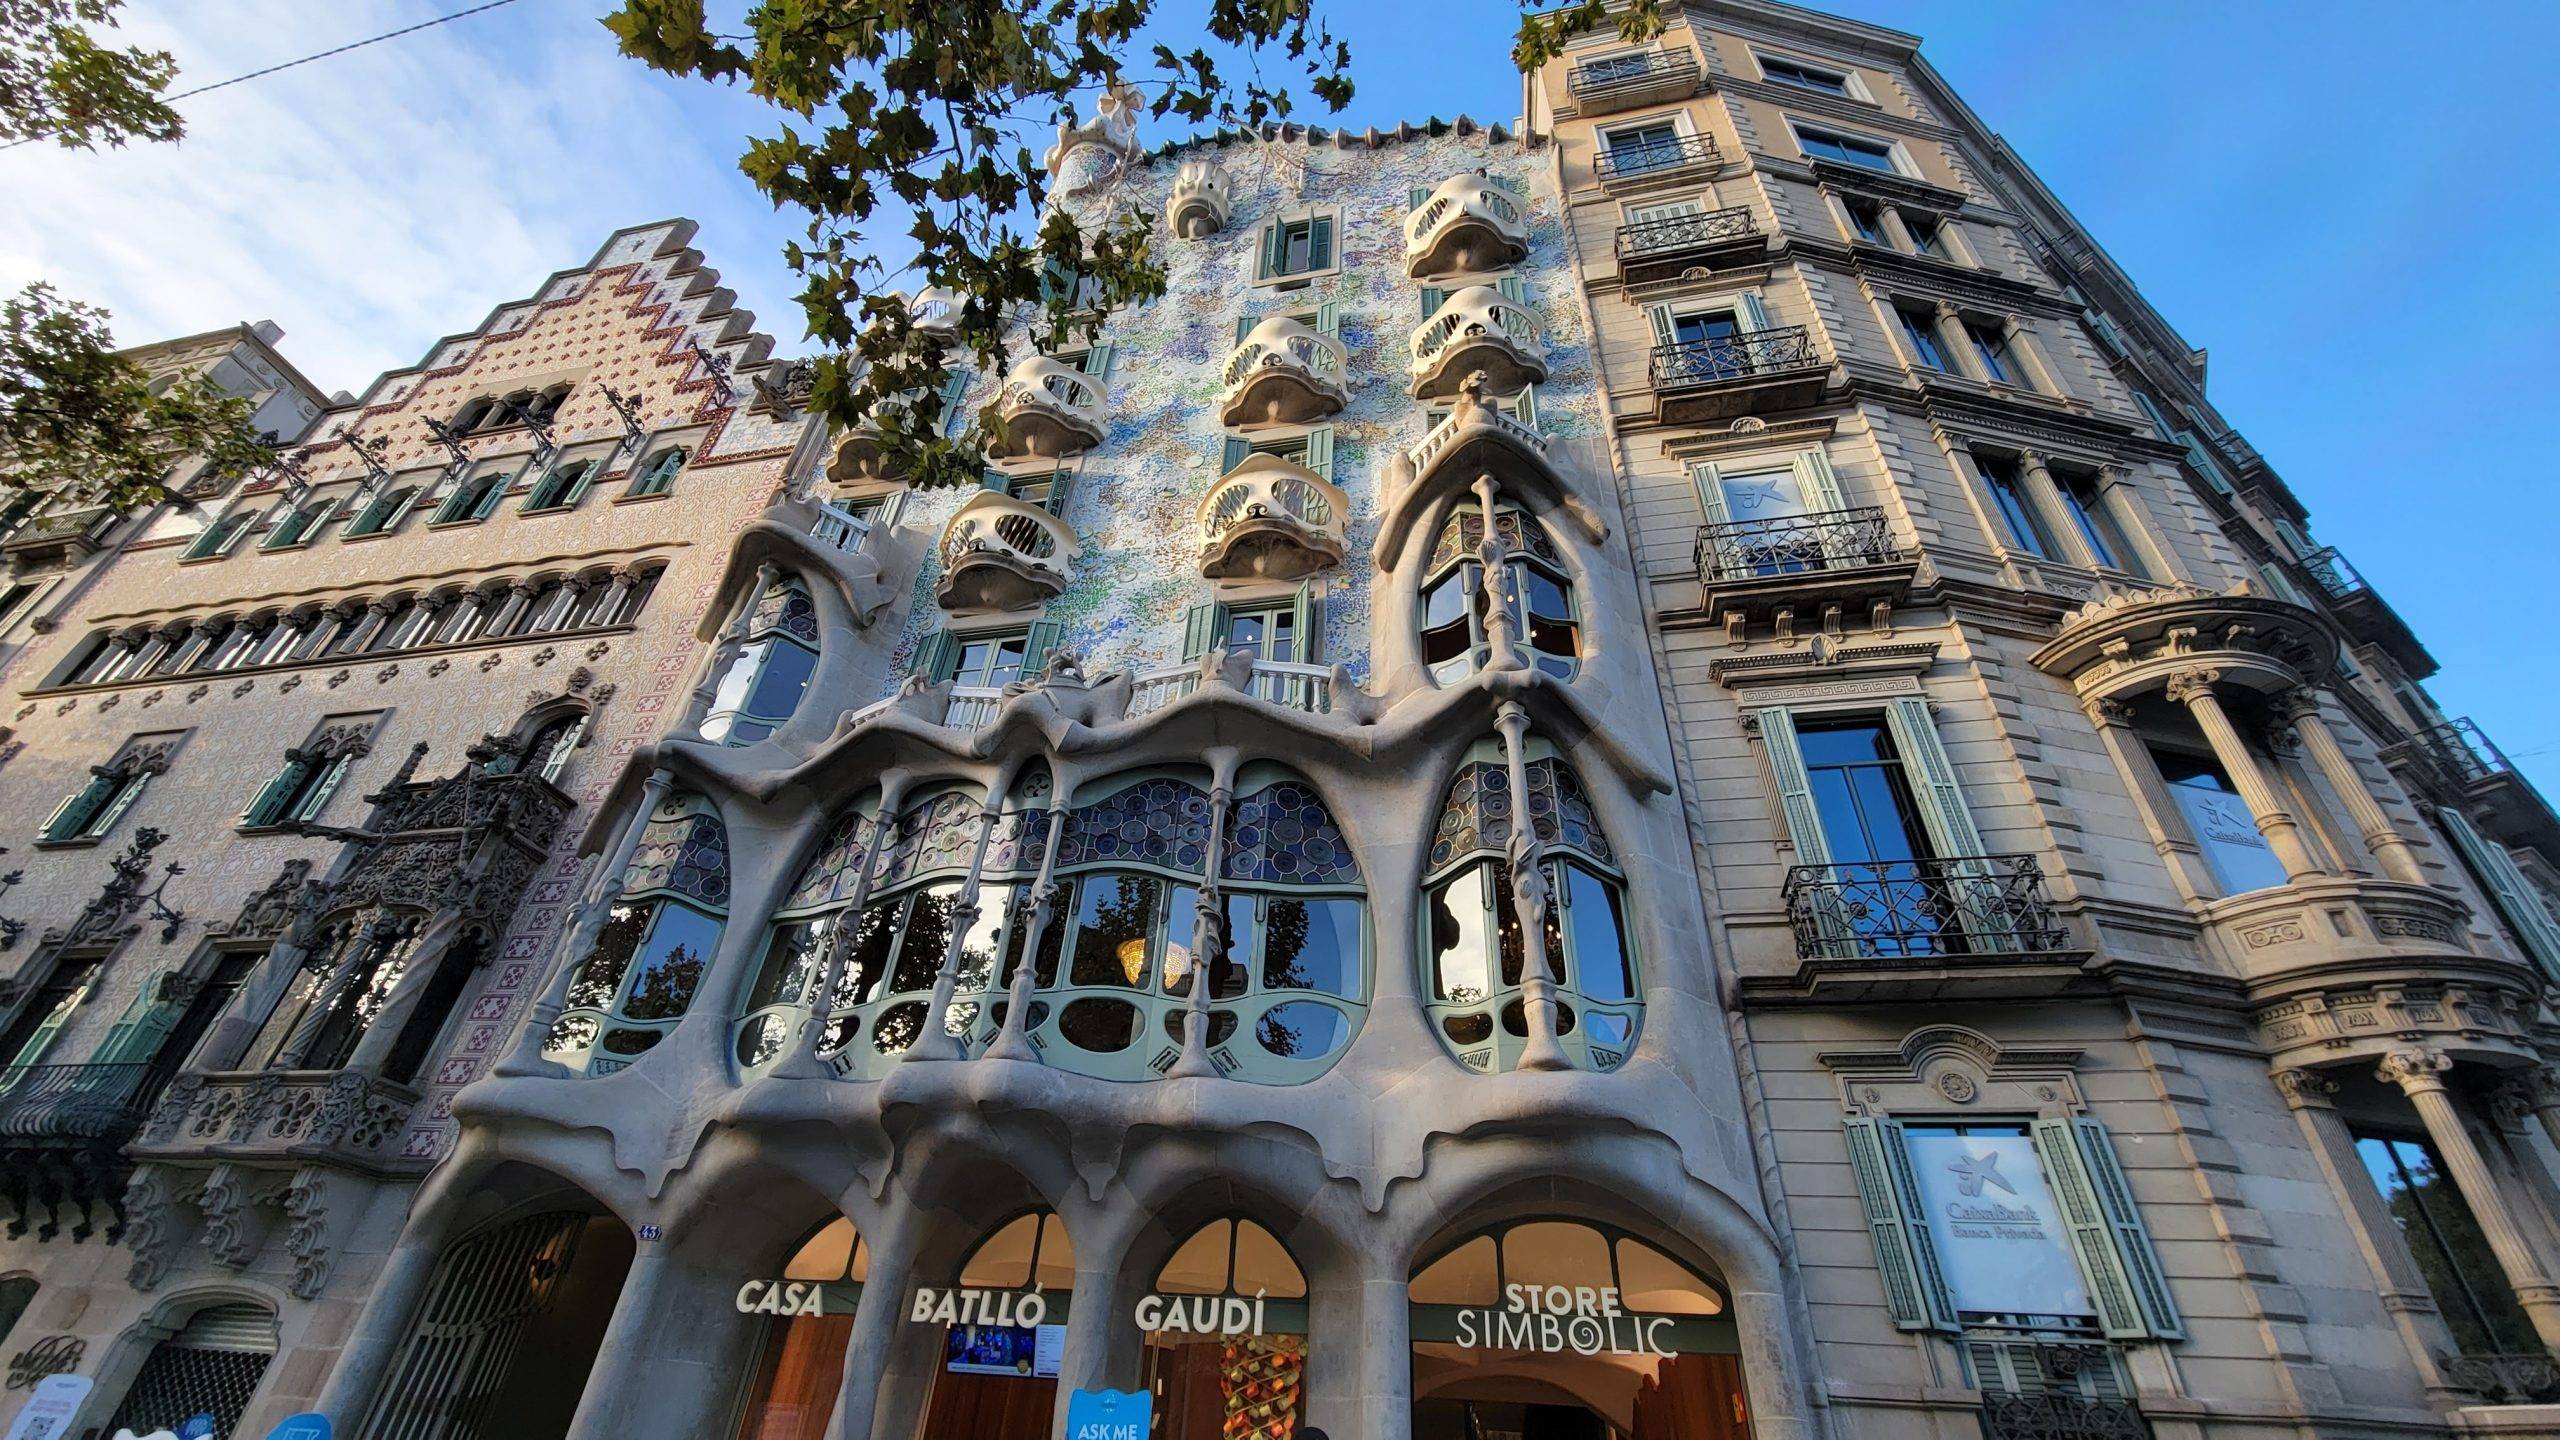 Facade of Casa Batllo in Barcelona